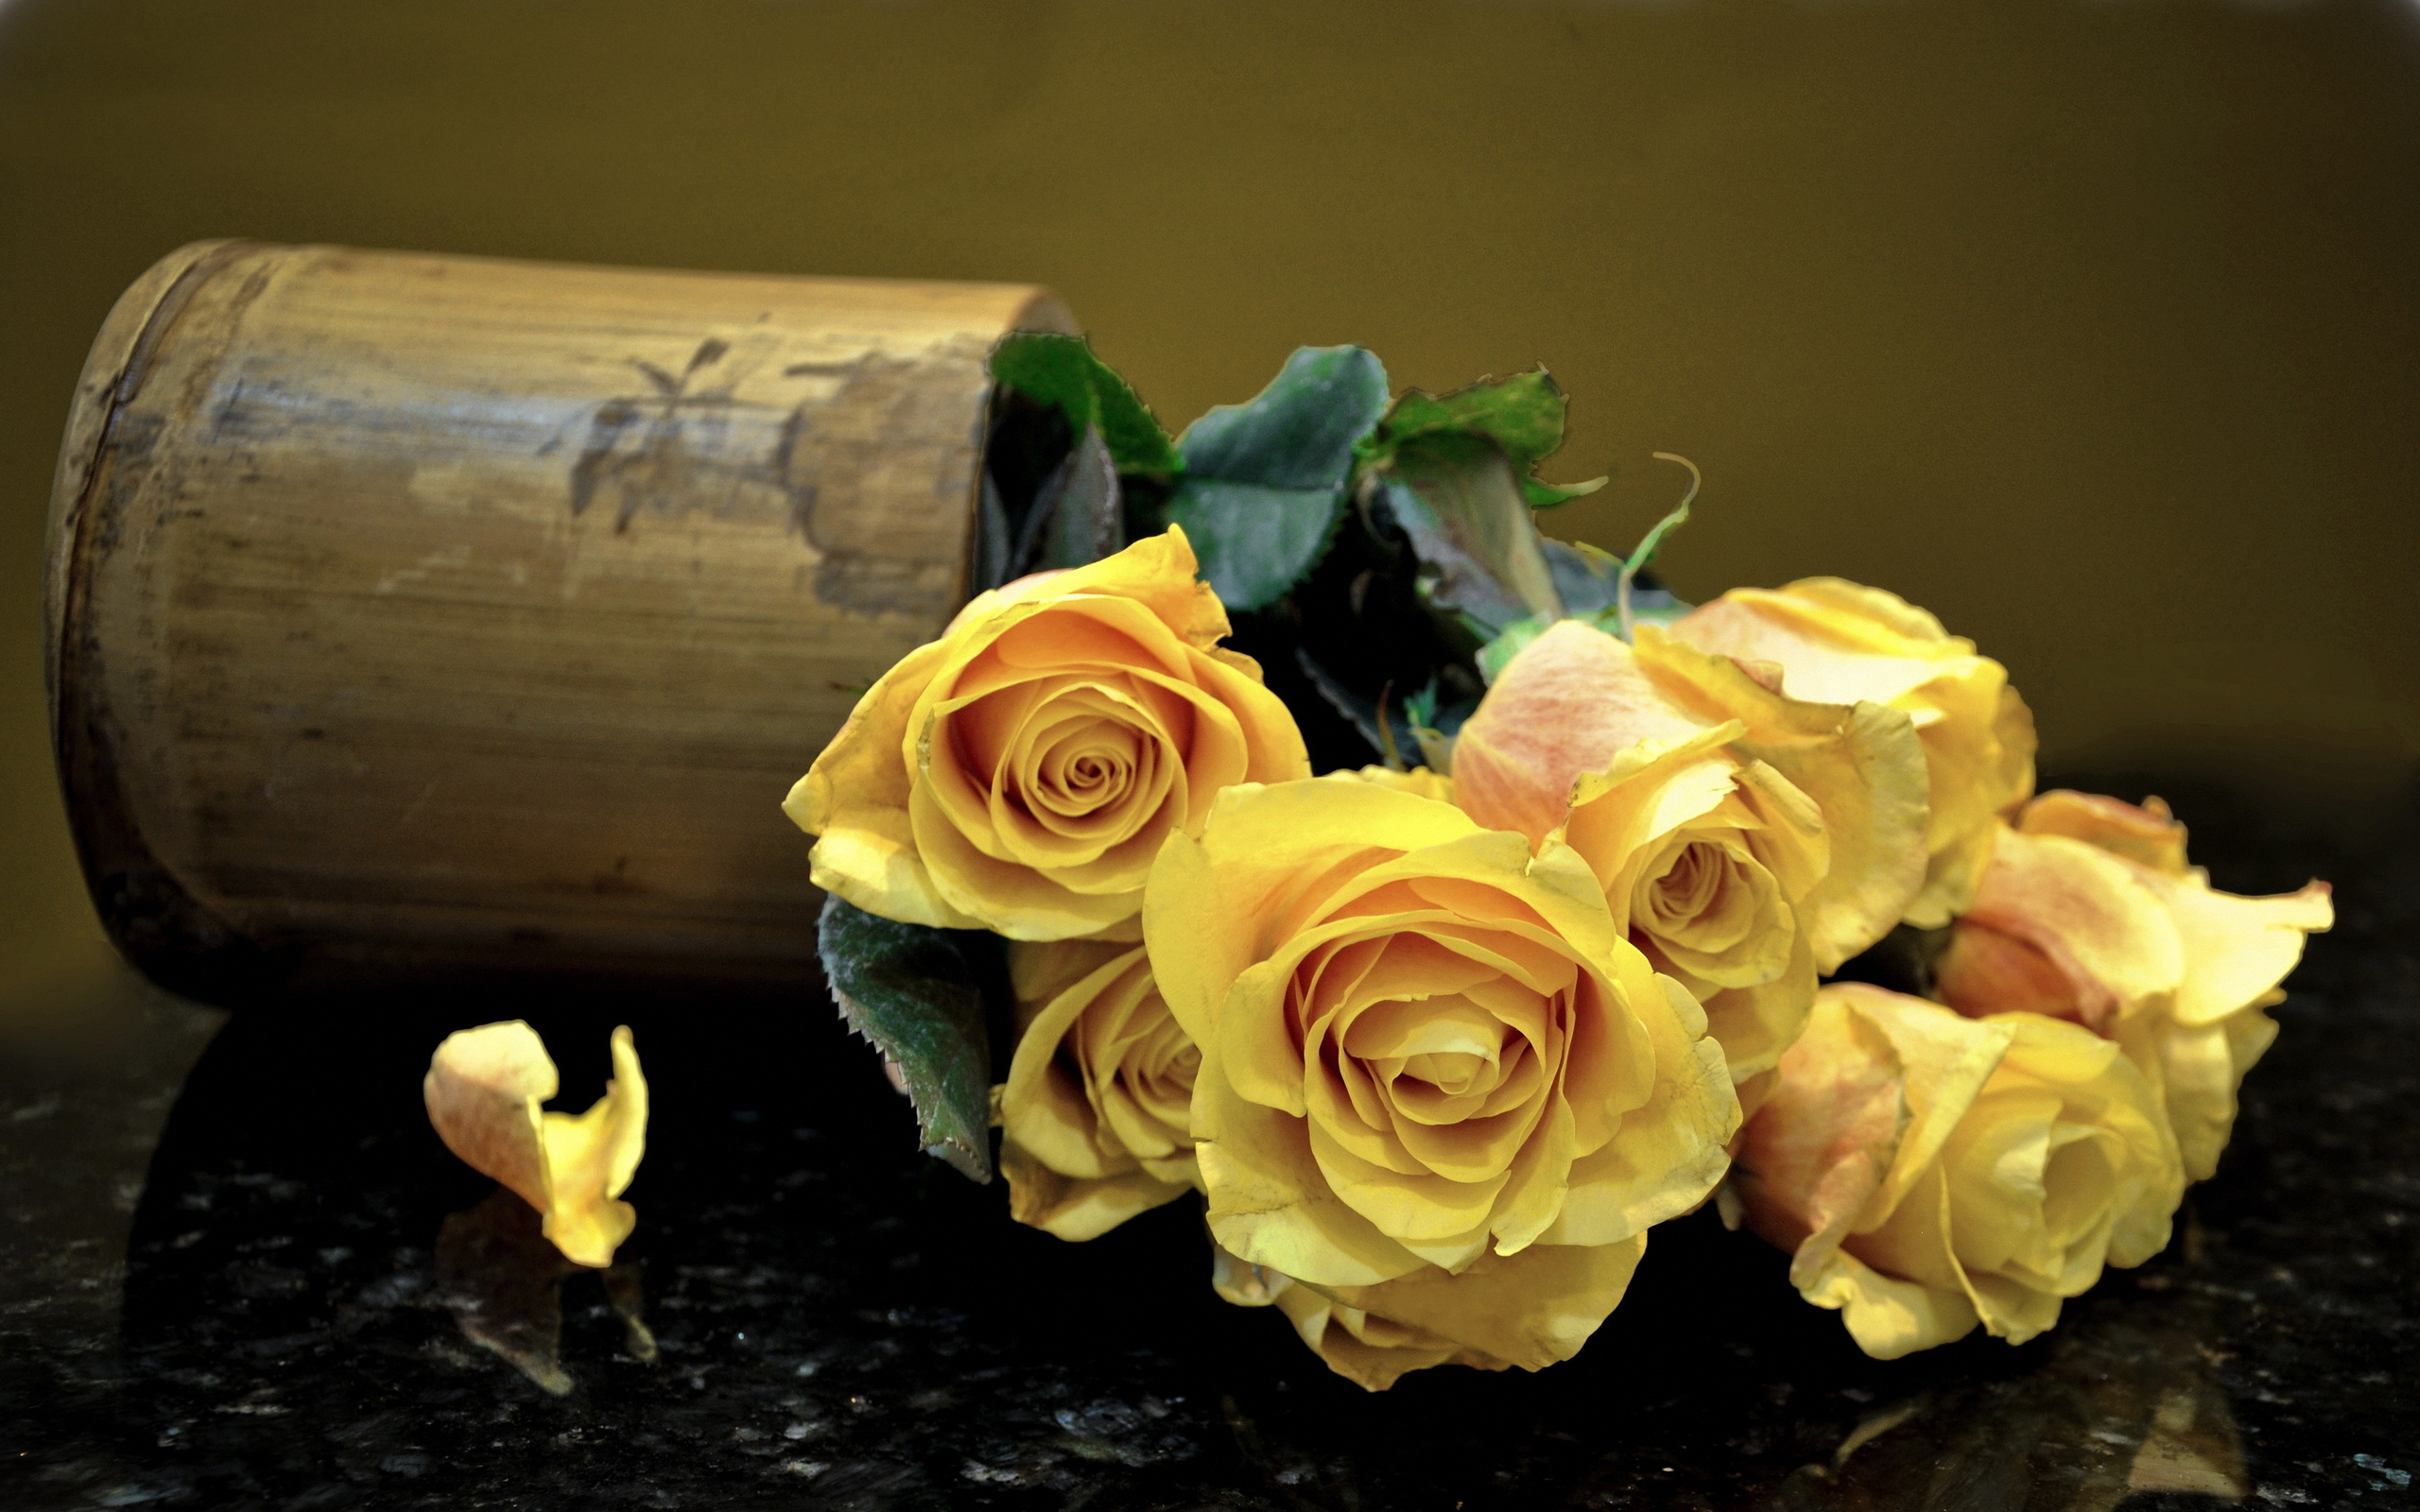 Шикарный букет желтых роз